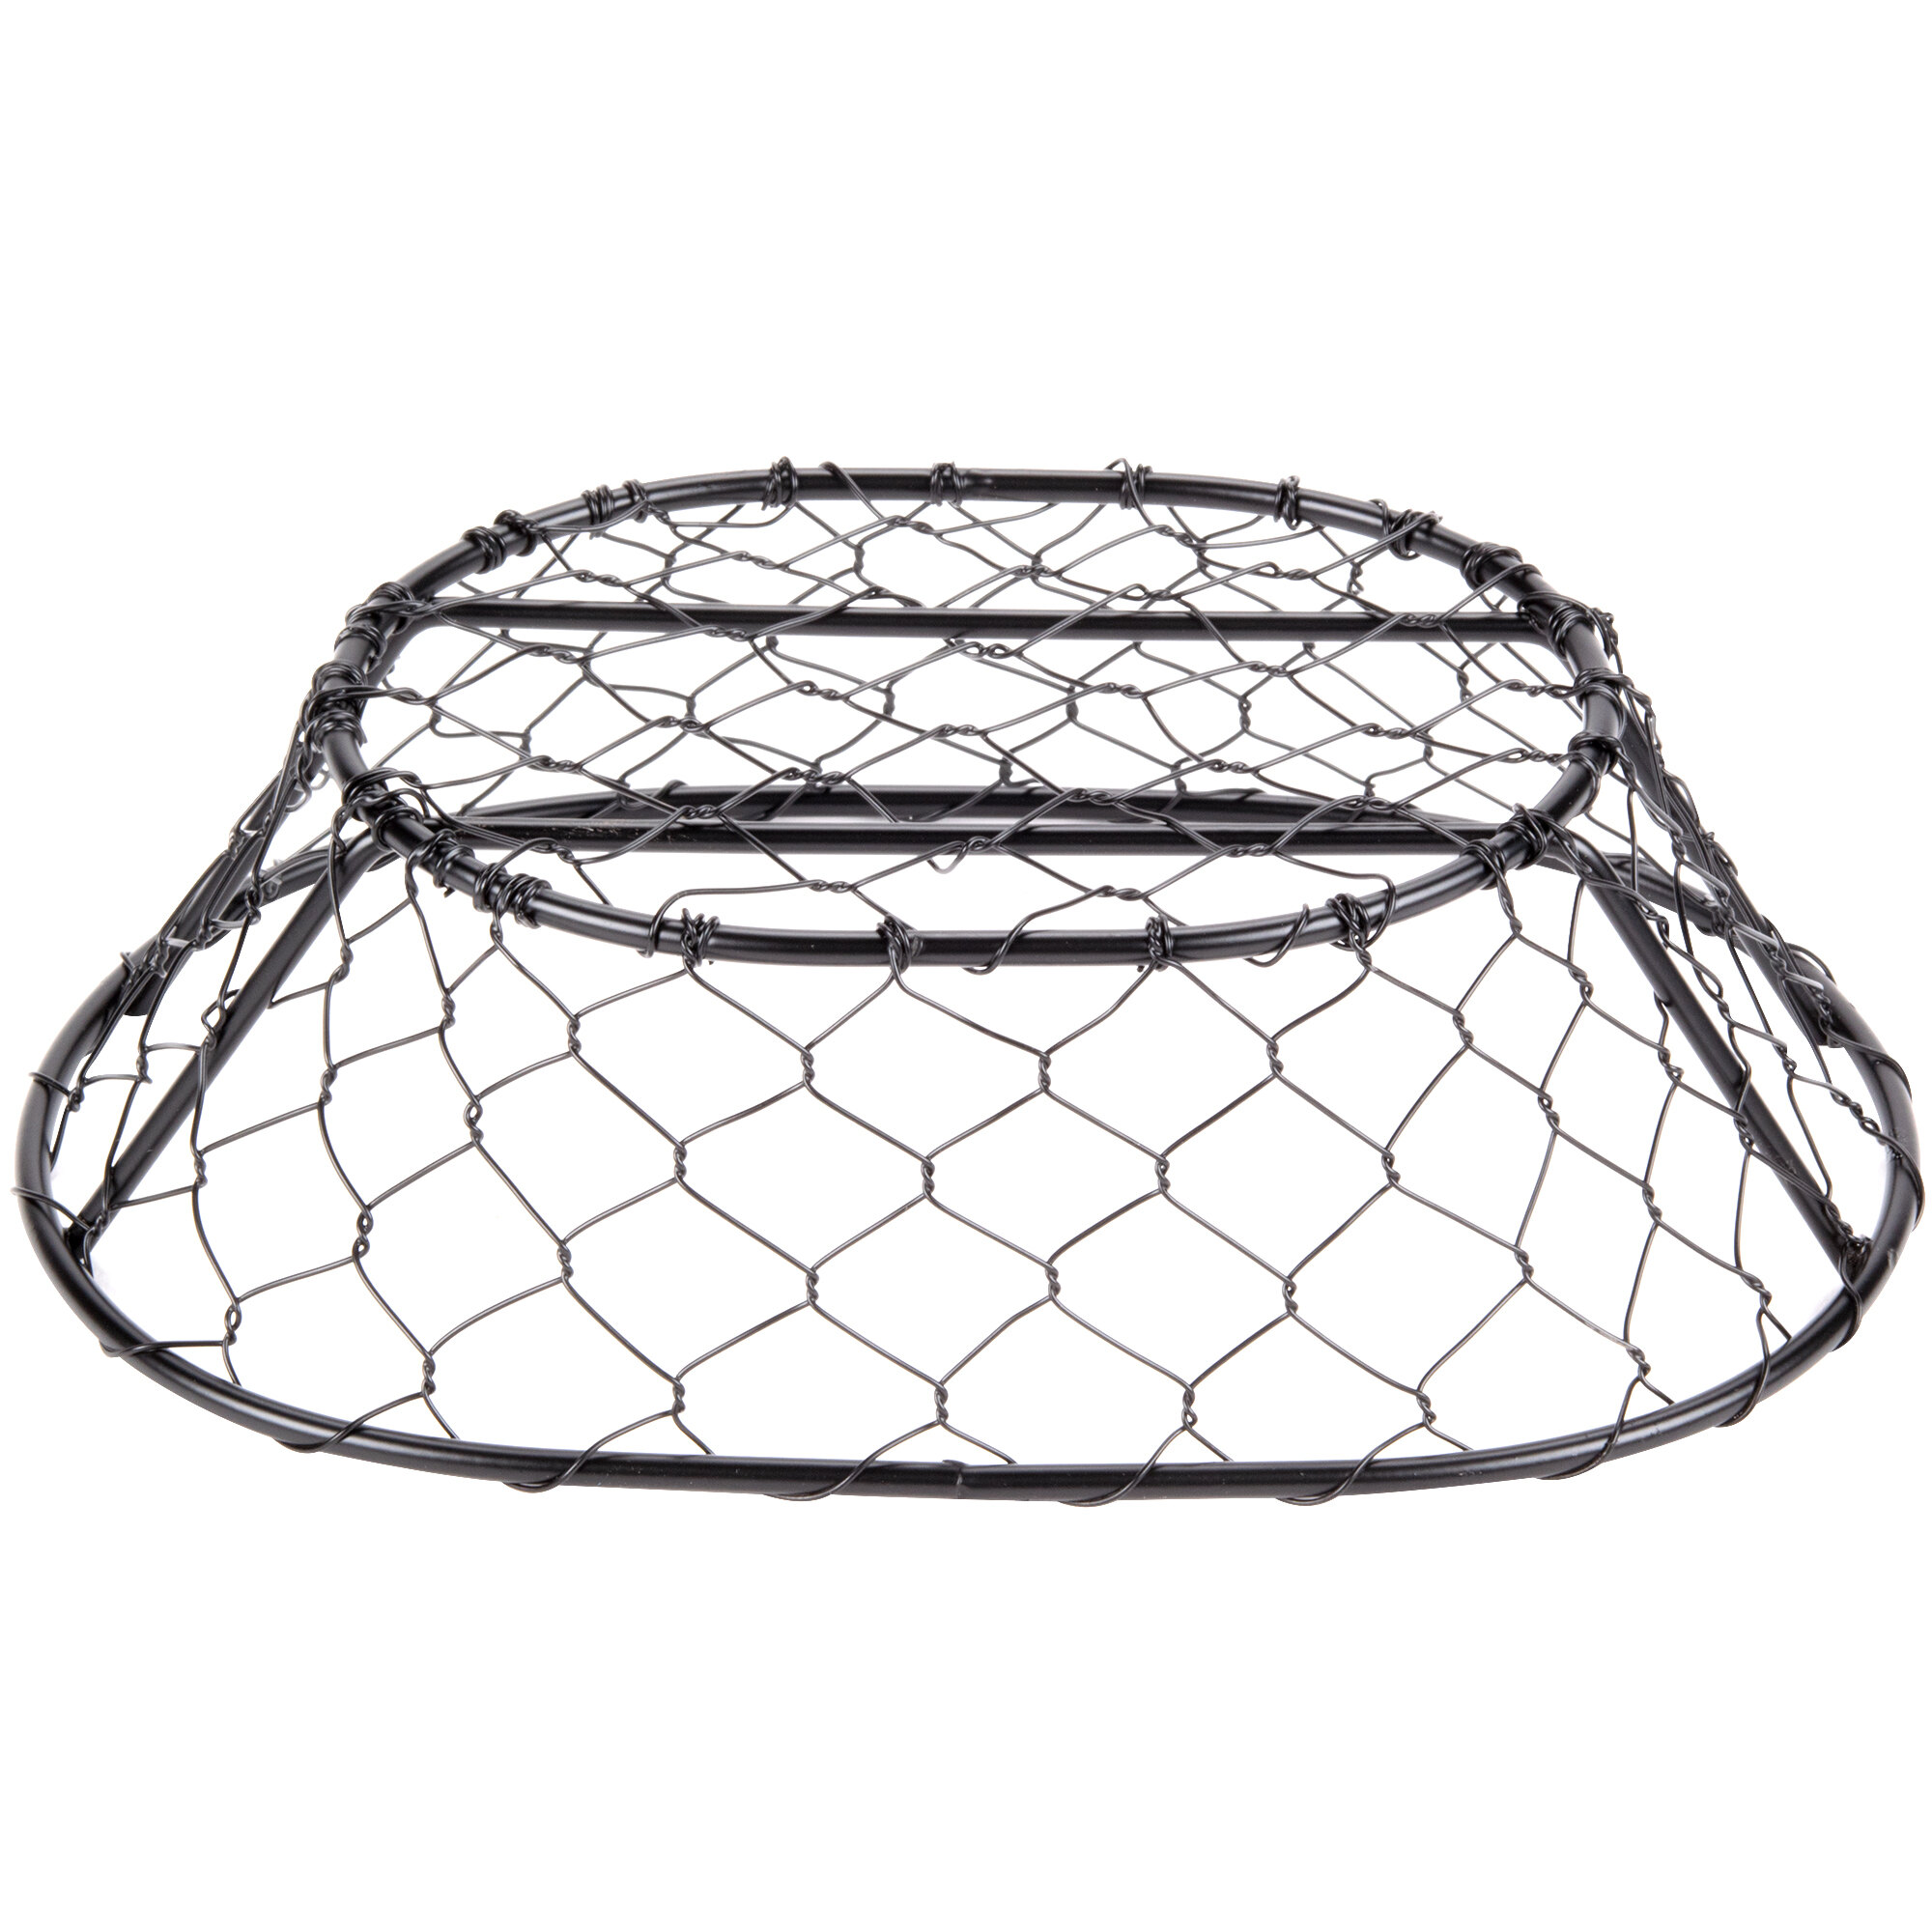 American Metalcraft WIR4 Oval Black Chicken Wire Basket - 9 1/2